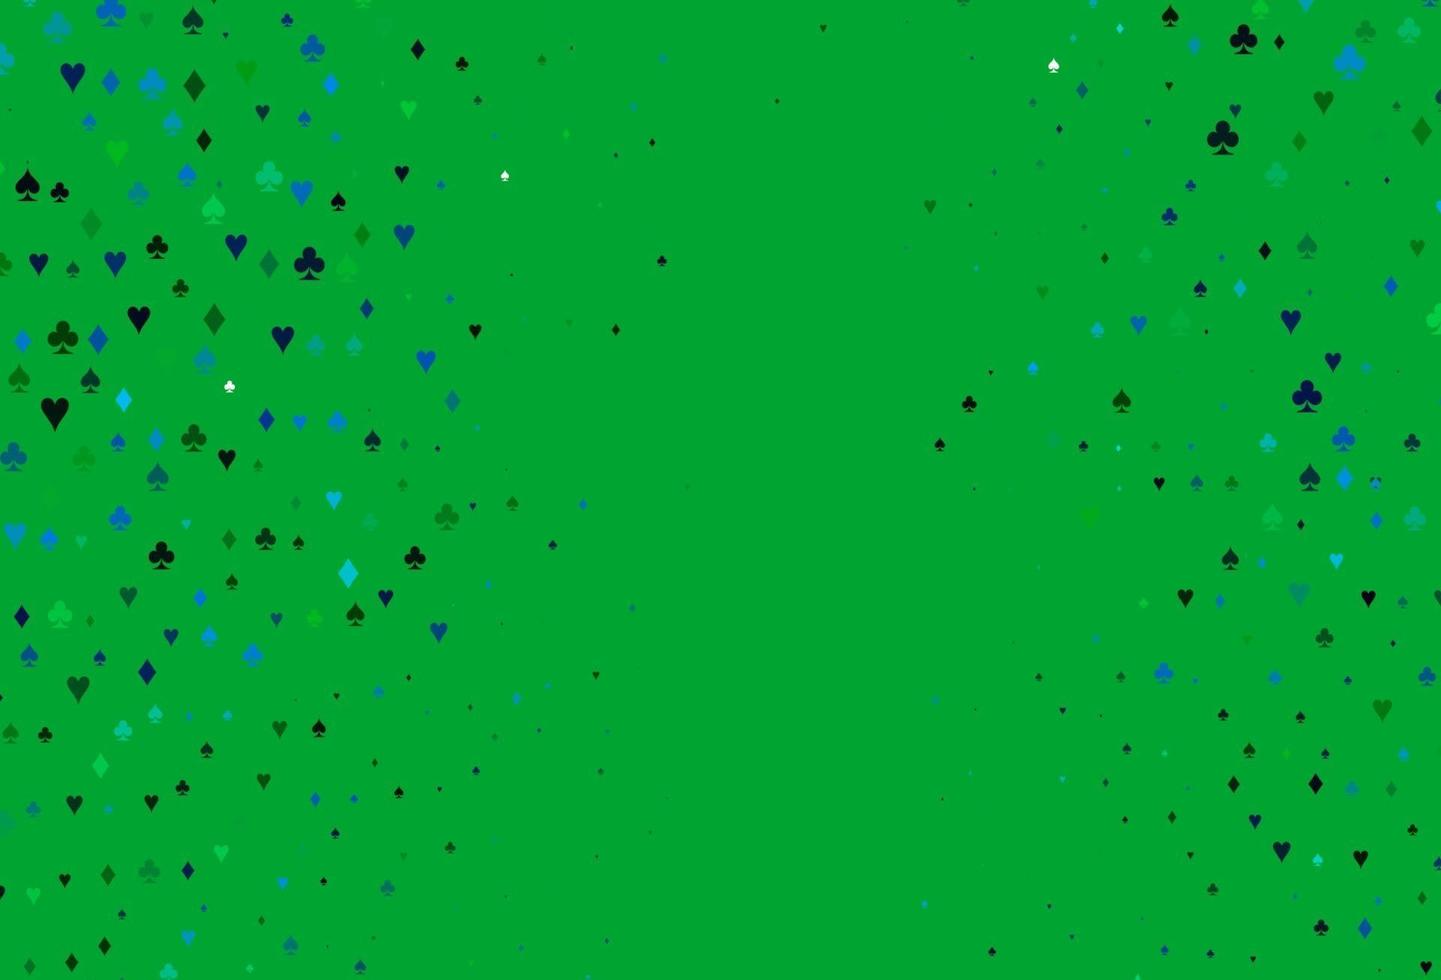 ljusblått, grönt vektoromslag med symboler för hasardspel. vektor